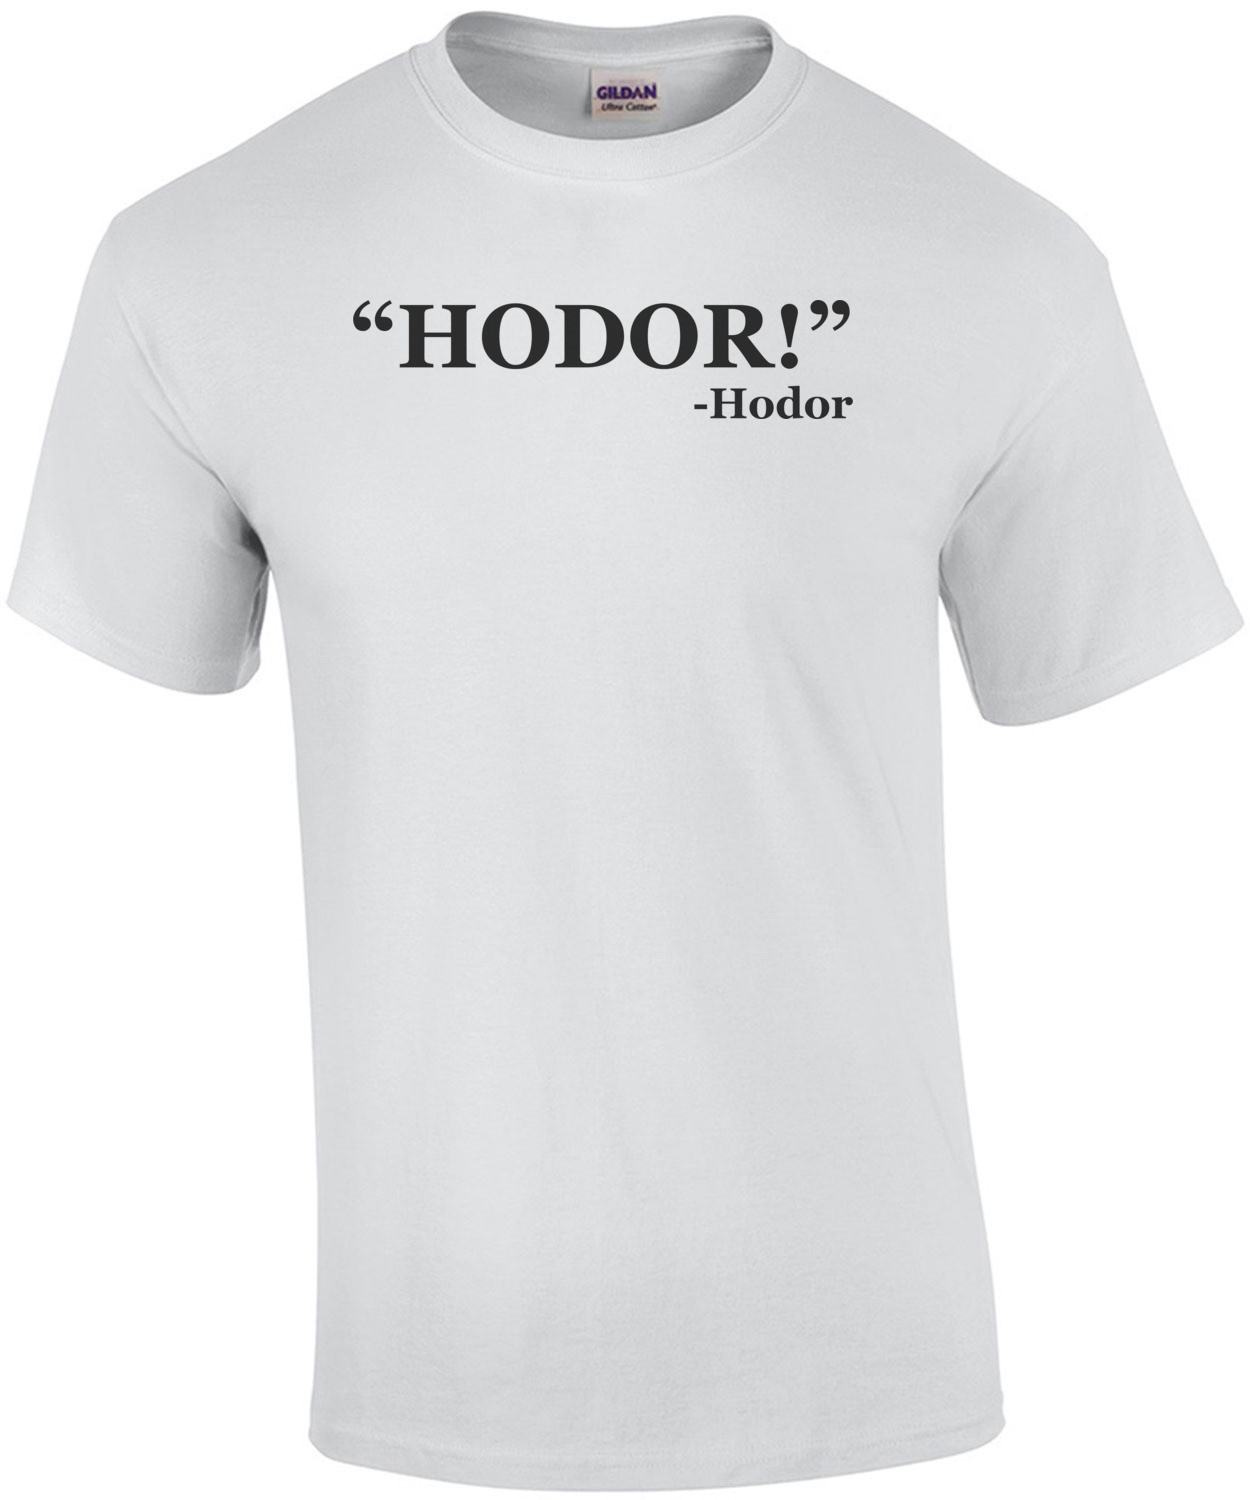 Hodor! Hodor Quote Tee Shirt